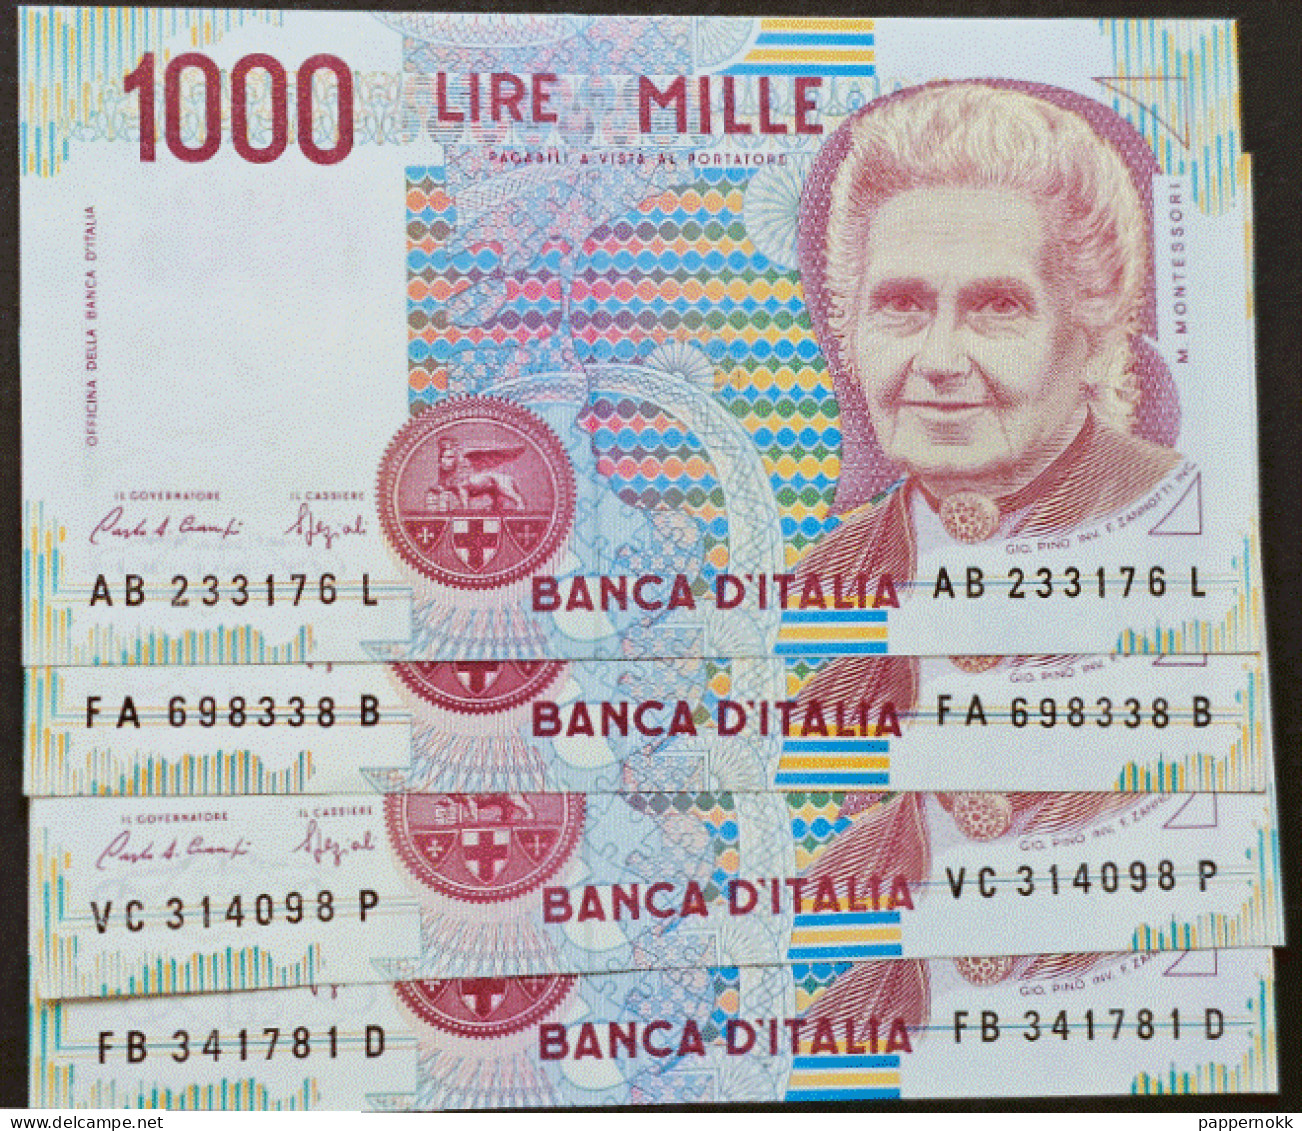 1000 Lire Montessori  4 Banconote  FDS/UNC  Banconote Impeccabili, Mai Circolate. - 1000 Lire